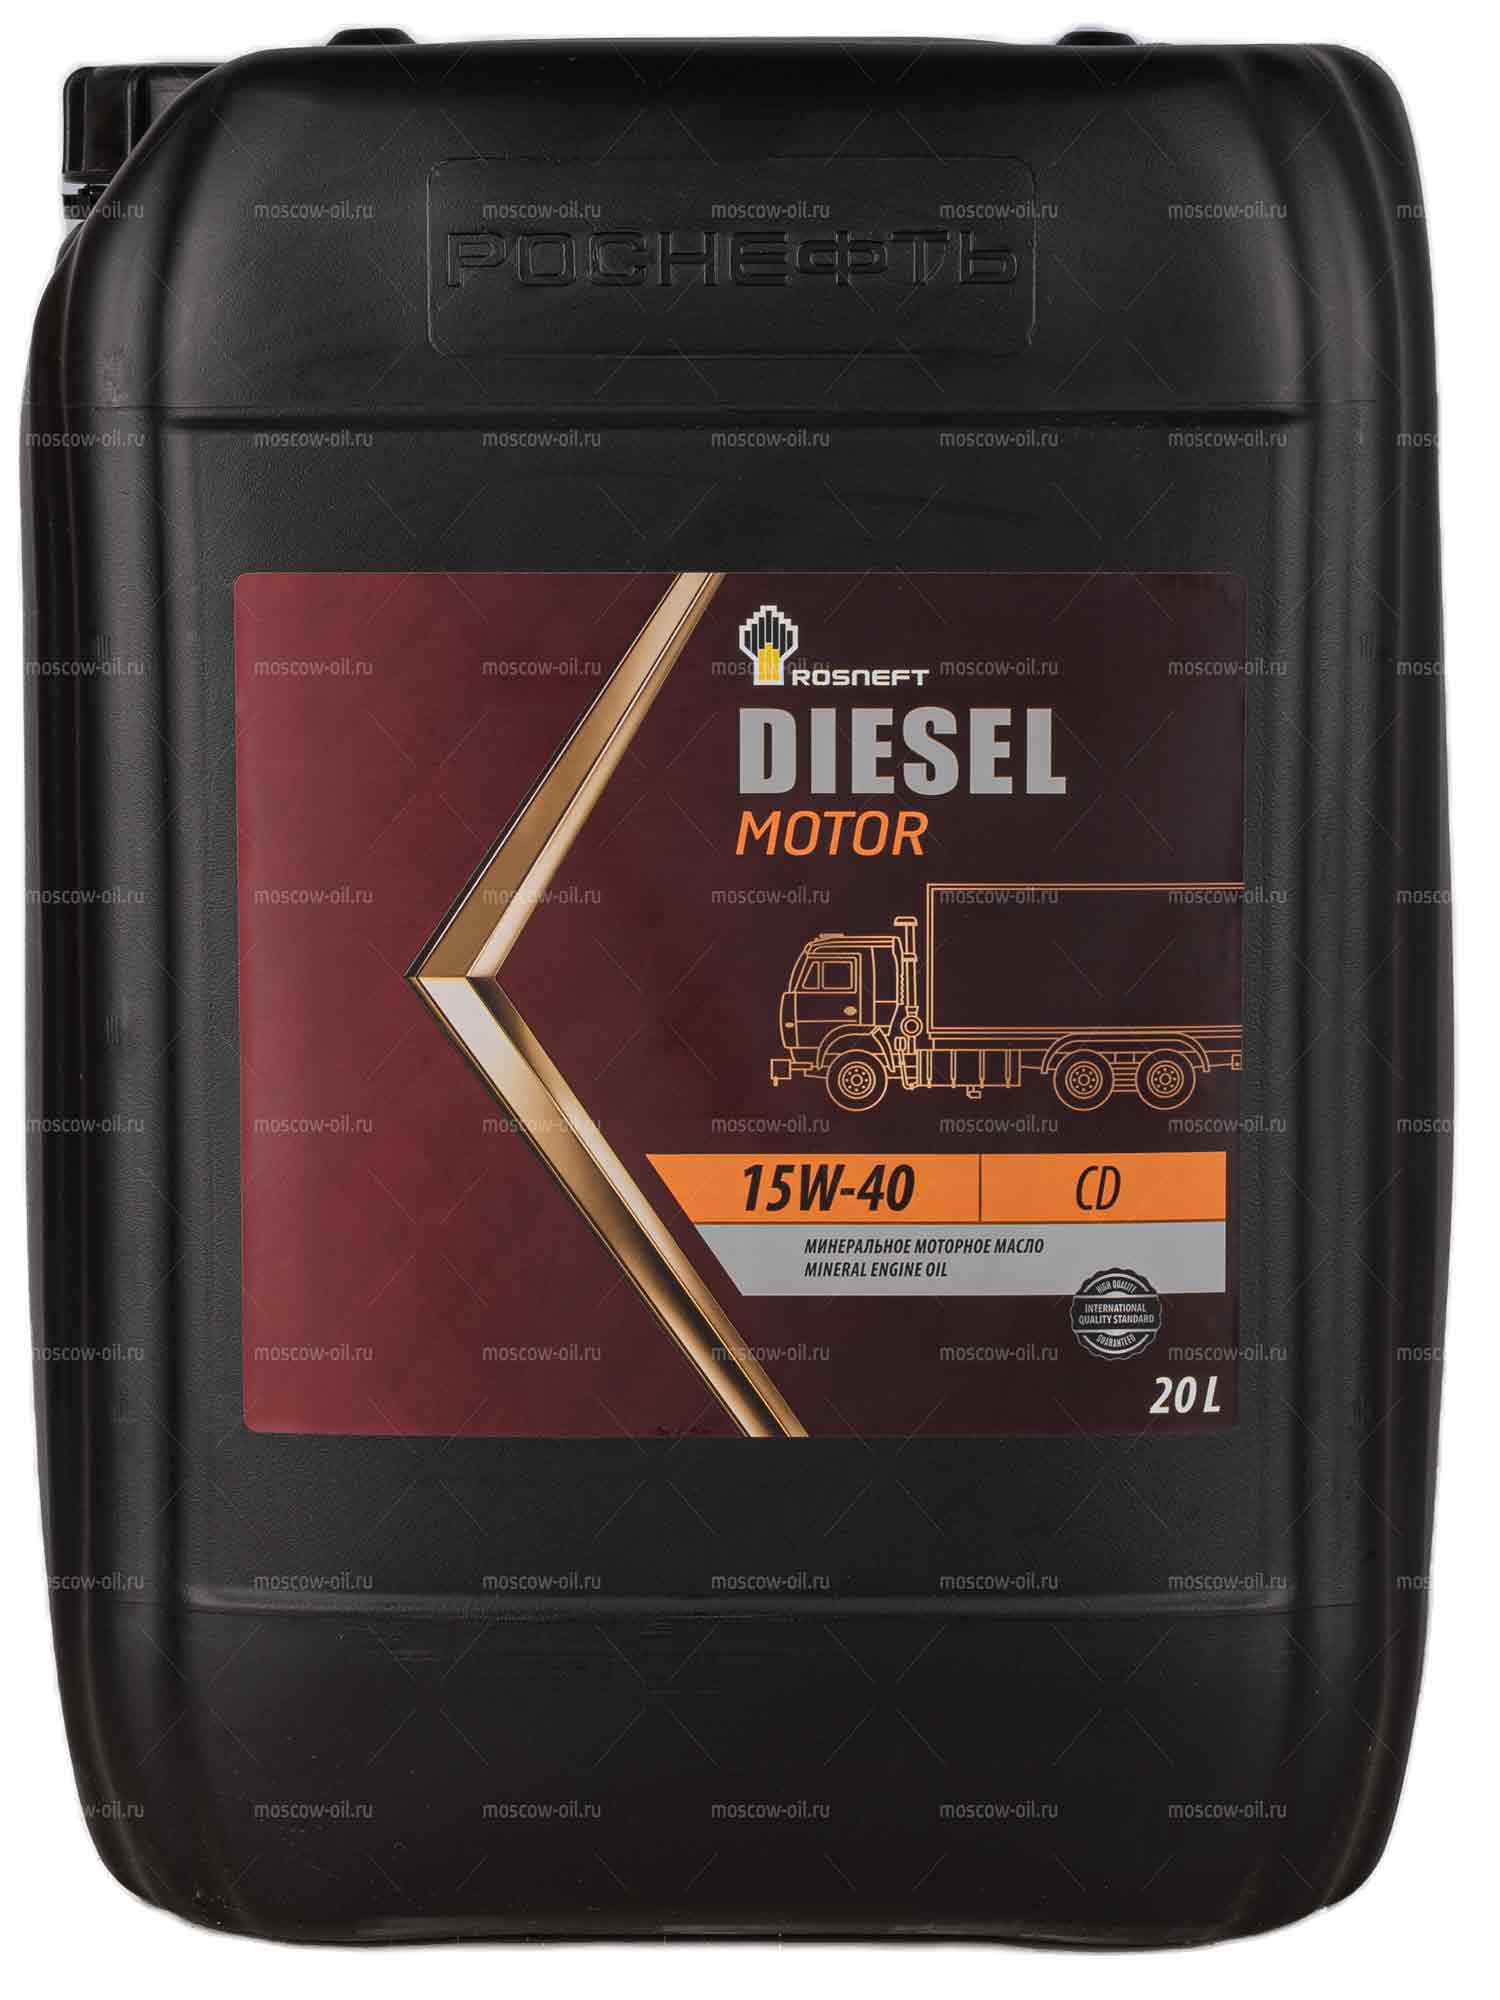 Rosneft Diesel Motor 15W-40